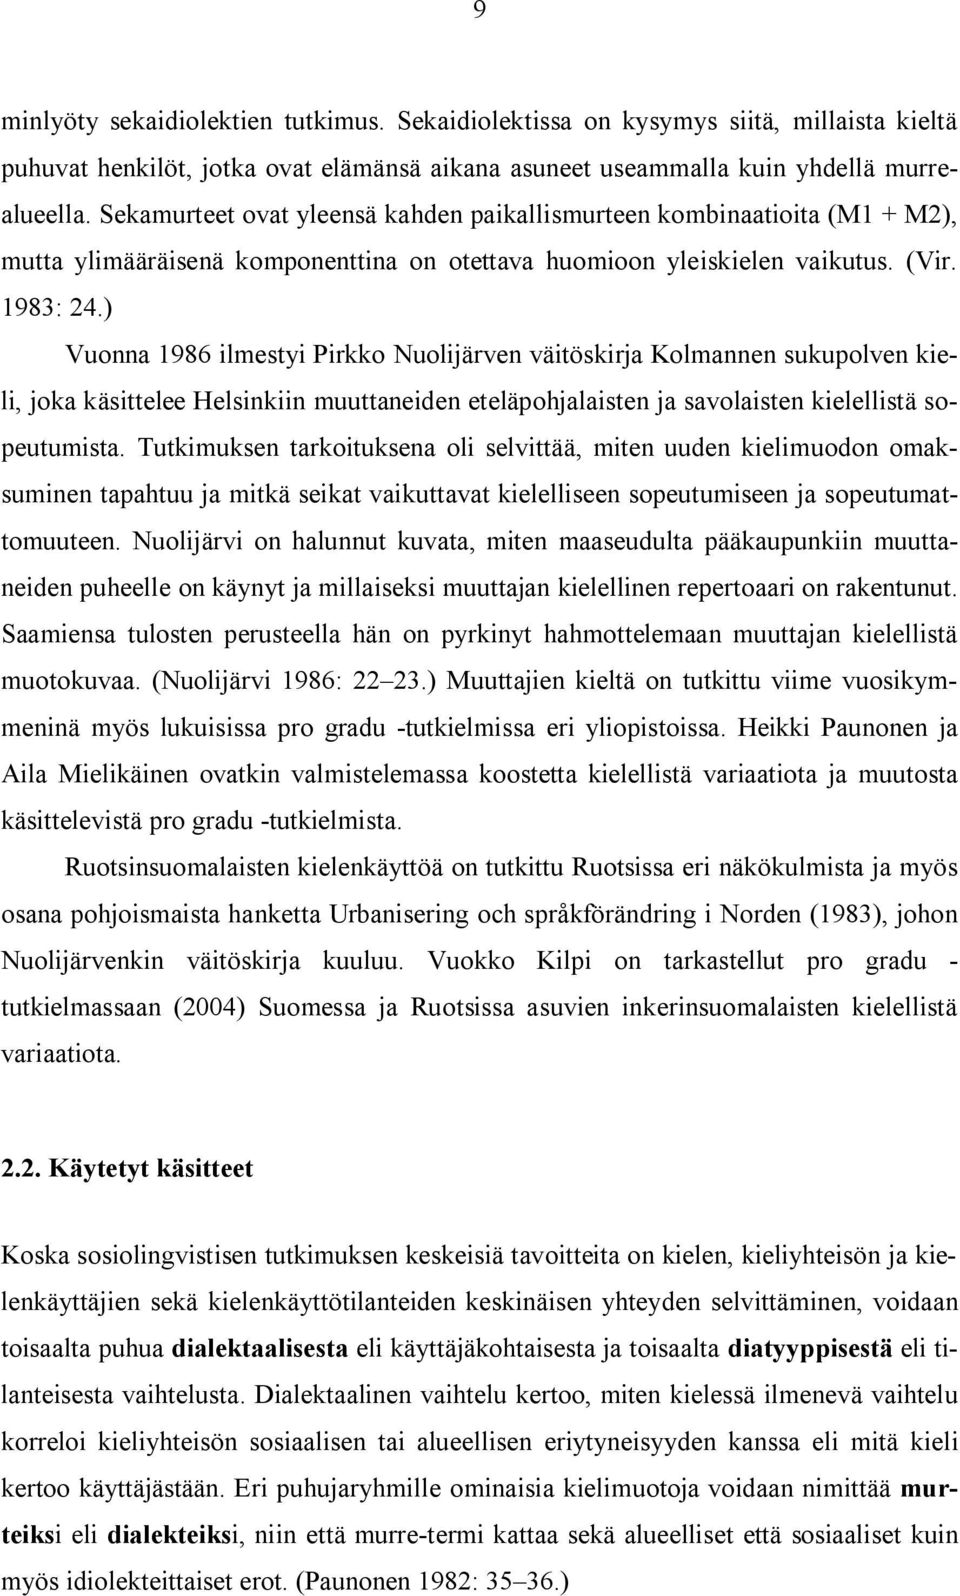 ) Vuonna 1986 ilmestyi Pirkko Nuolijärven väitöskirja Kolmannen sukupolven kieli, joka käsittelee Helsinkiin muuttaneiden eteläpohjalaisten ja savolaisten kielellistä sopeutumista.